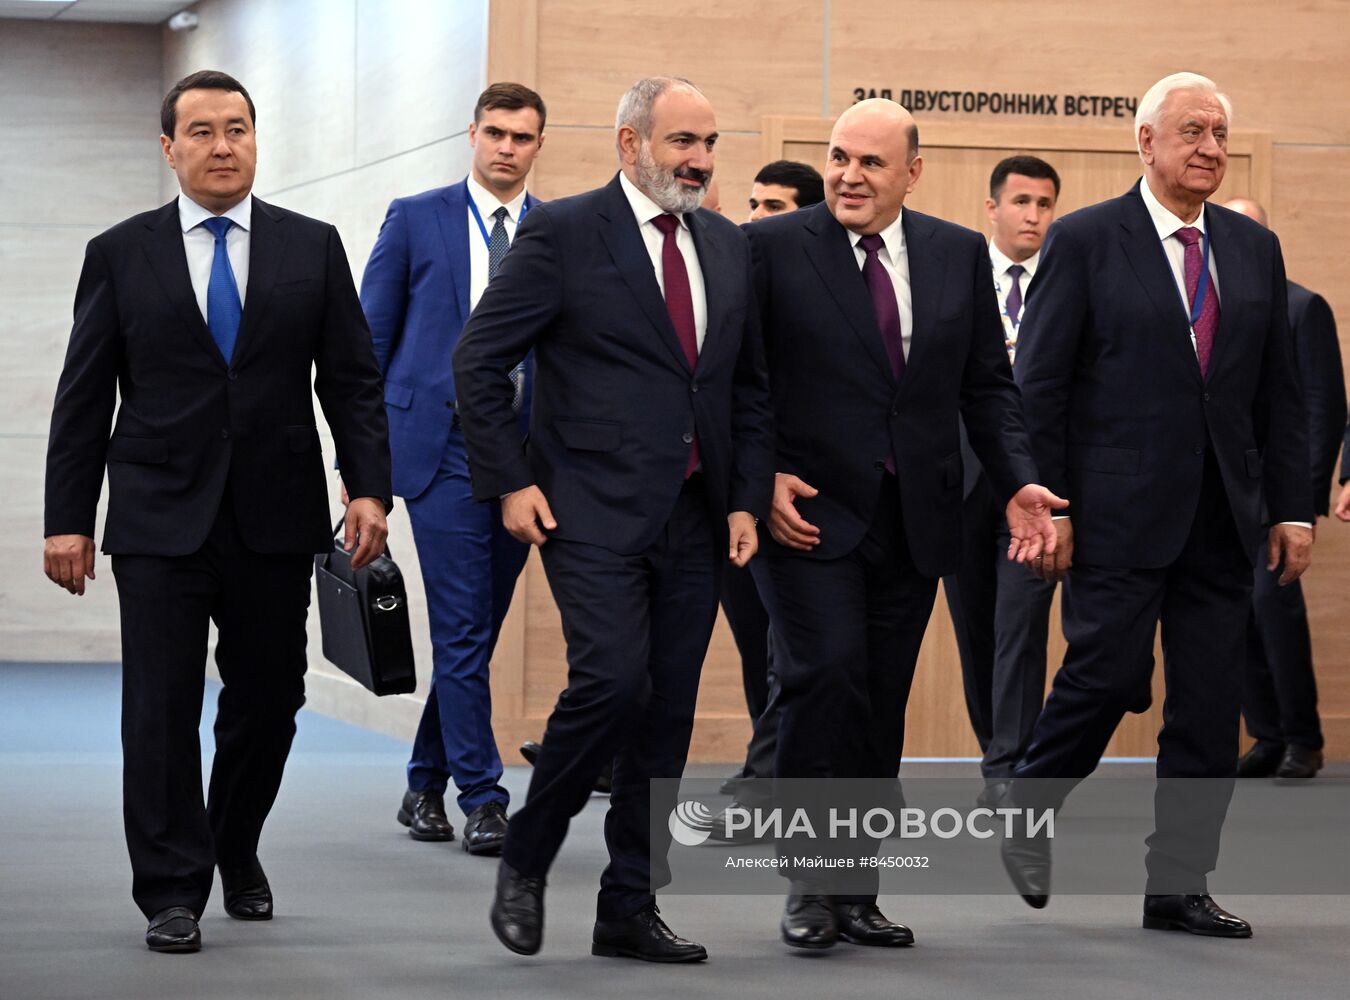 Евразийский межправительственный совет. Заседание в узком составе